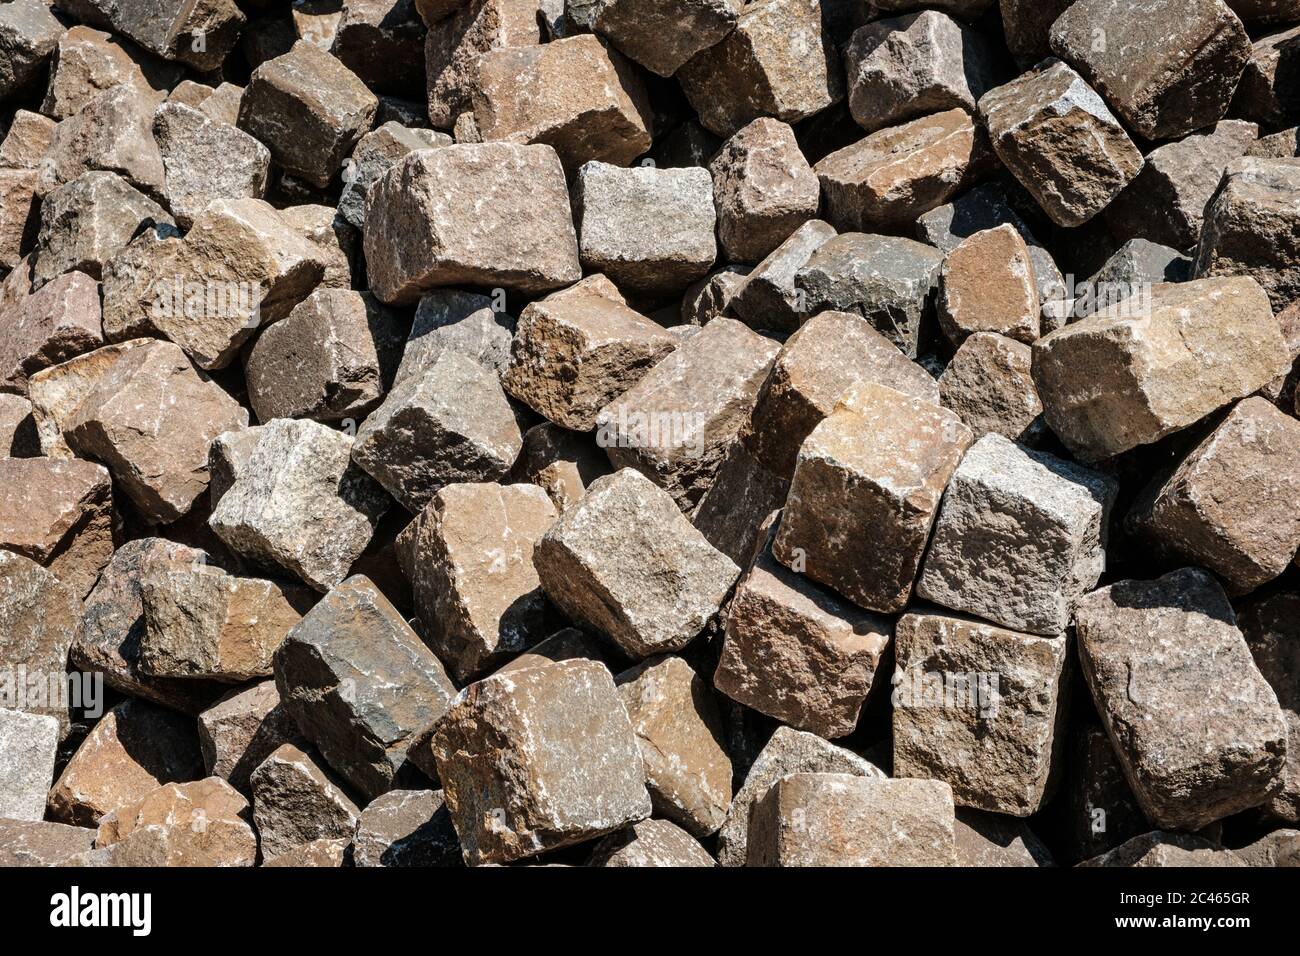 pila de piedras de adoquín - piedra de pavimento cierre Fotografía de stock  - Alamy